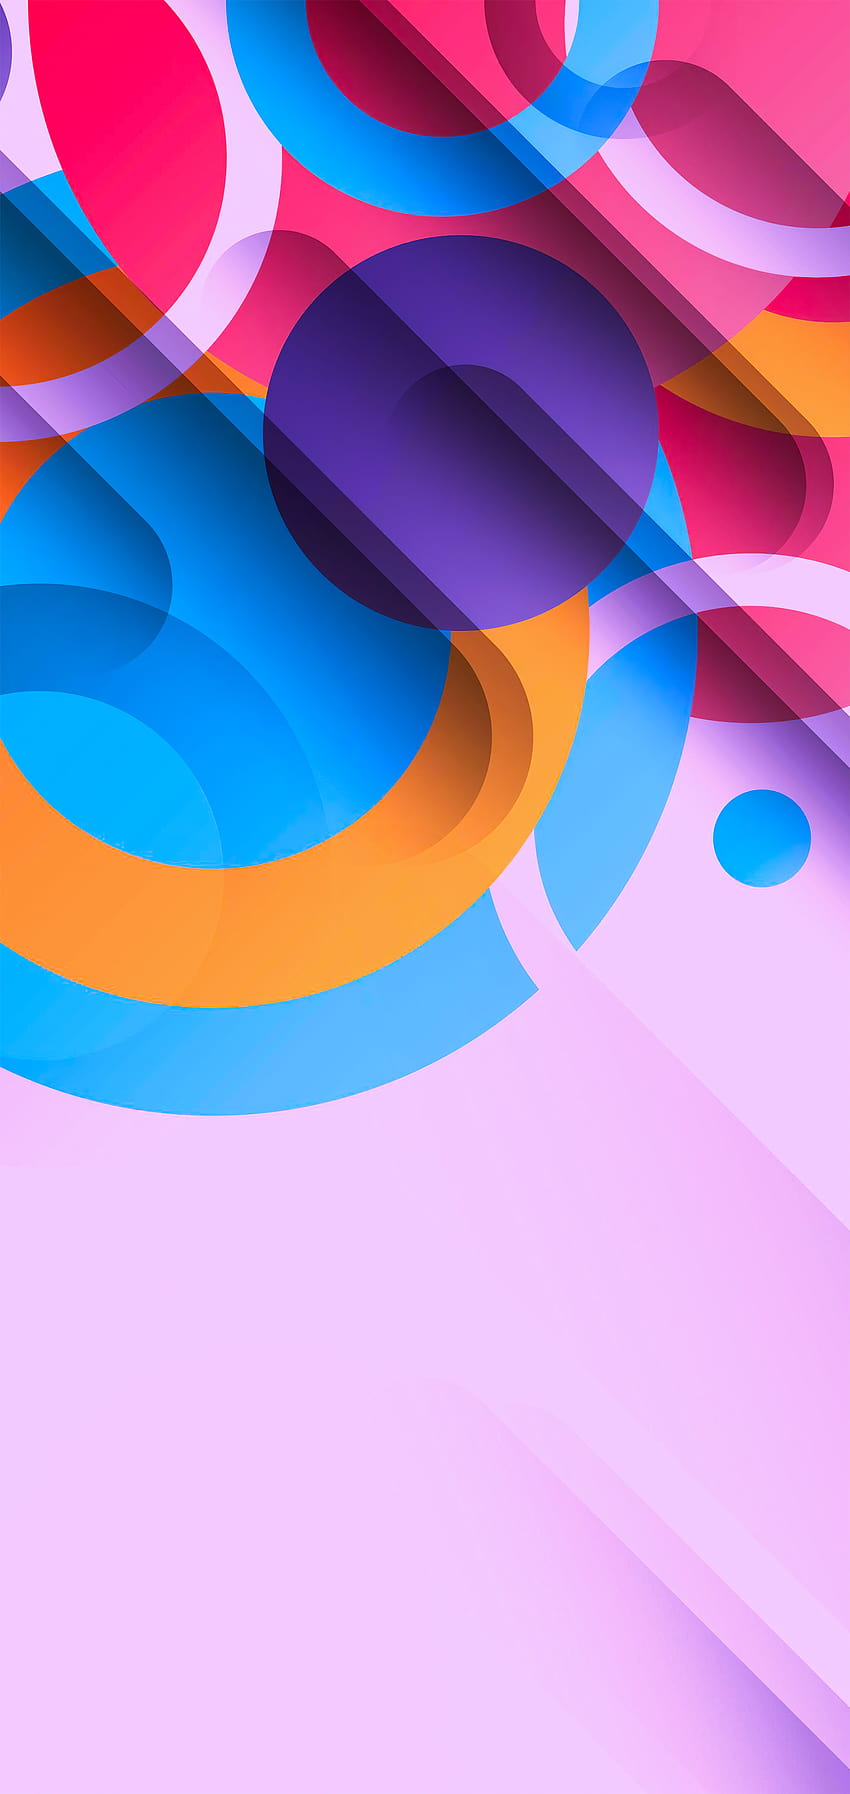 Resumen con formas y colores geométricos para iPhone, patrón de formas geométricas coloridas fondo de pantalla del teléfono